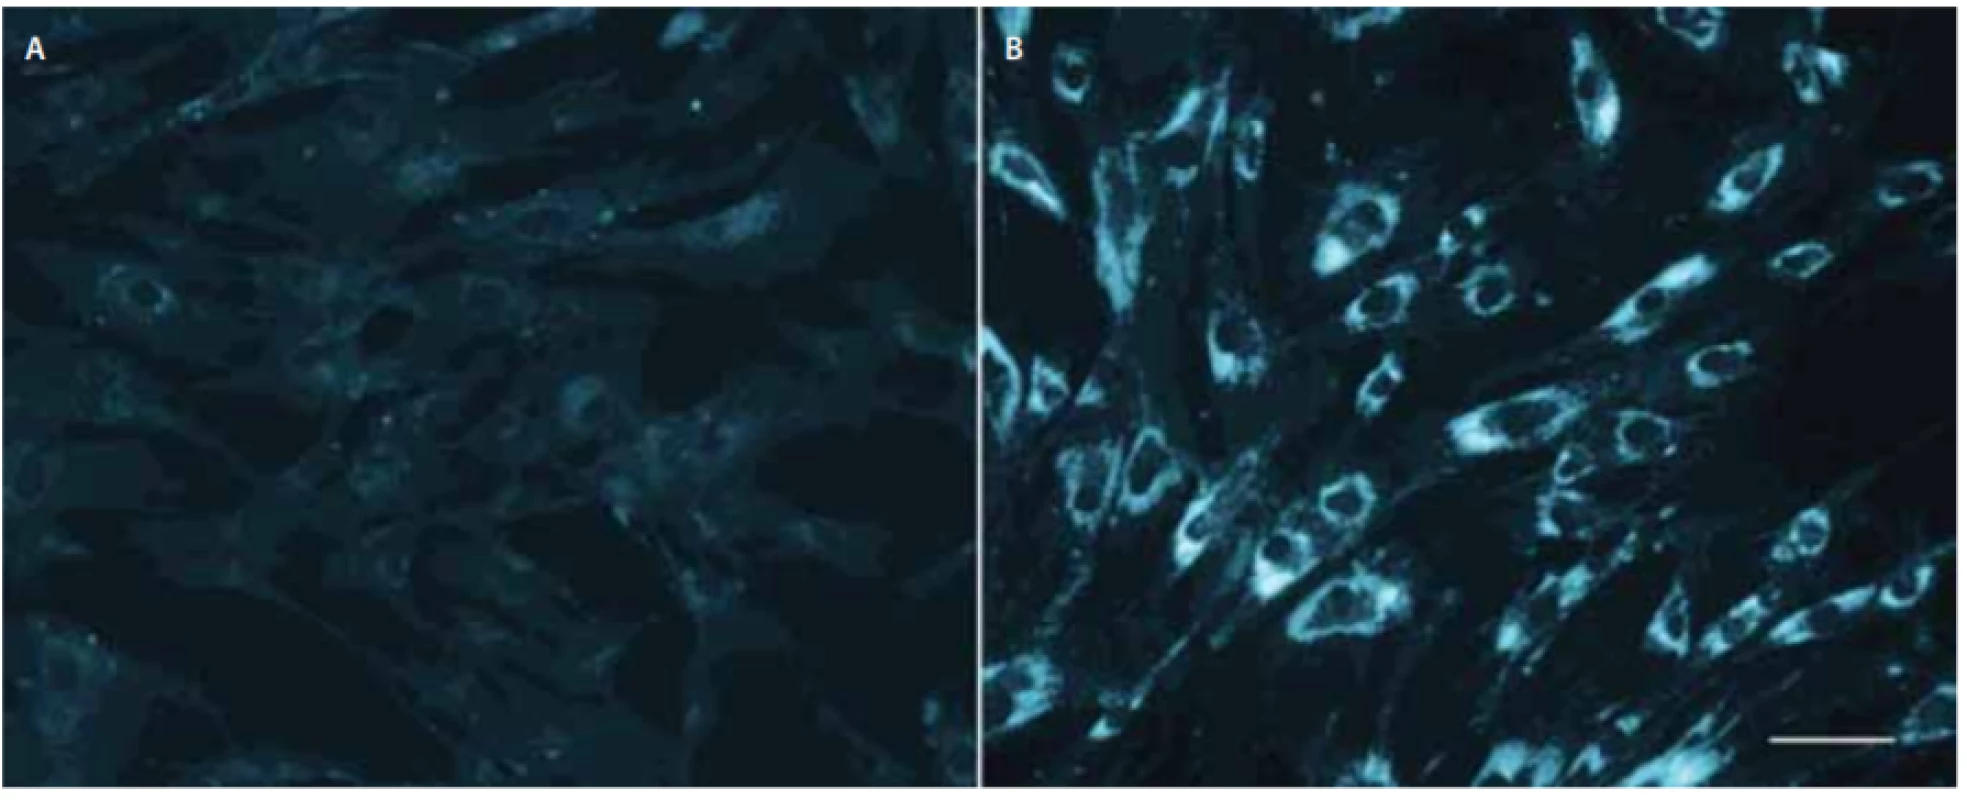 Buněčné kultury kožních fibroblastů po barvení filipinem, bez zátěže liproteinem o nízké hustotě. Levý panel (A) kontrolní fibroblasty; pravý panel (B) fibroblasty pacienta s infantilní formou Niemann-Pickovy choroby typu C1 nesoucího dvě nulové mutace<br>
v NPC1. Délka značky v pravé části odpovídá 50 μm.
Fig. 2. Filipin staining of skin fi broblast cell cultures without low-density lipoprotein-challenge. Left panel (A) control fibroblasts; right
panel (B) fi broblasts from an infantile Niemann-Pick disease type C1 patient carrying two null mutations in NPC1. Marker on the right
corresponds to 50 μm.